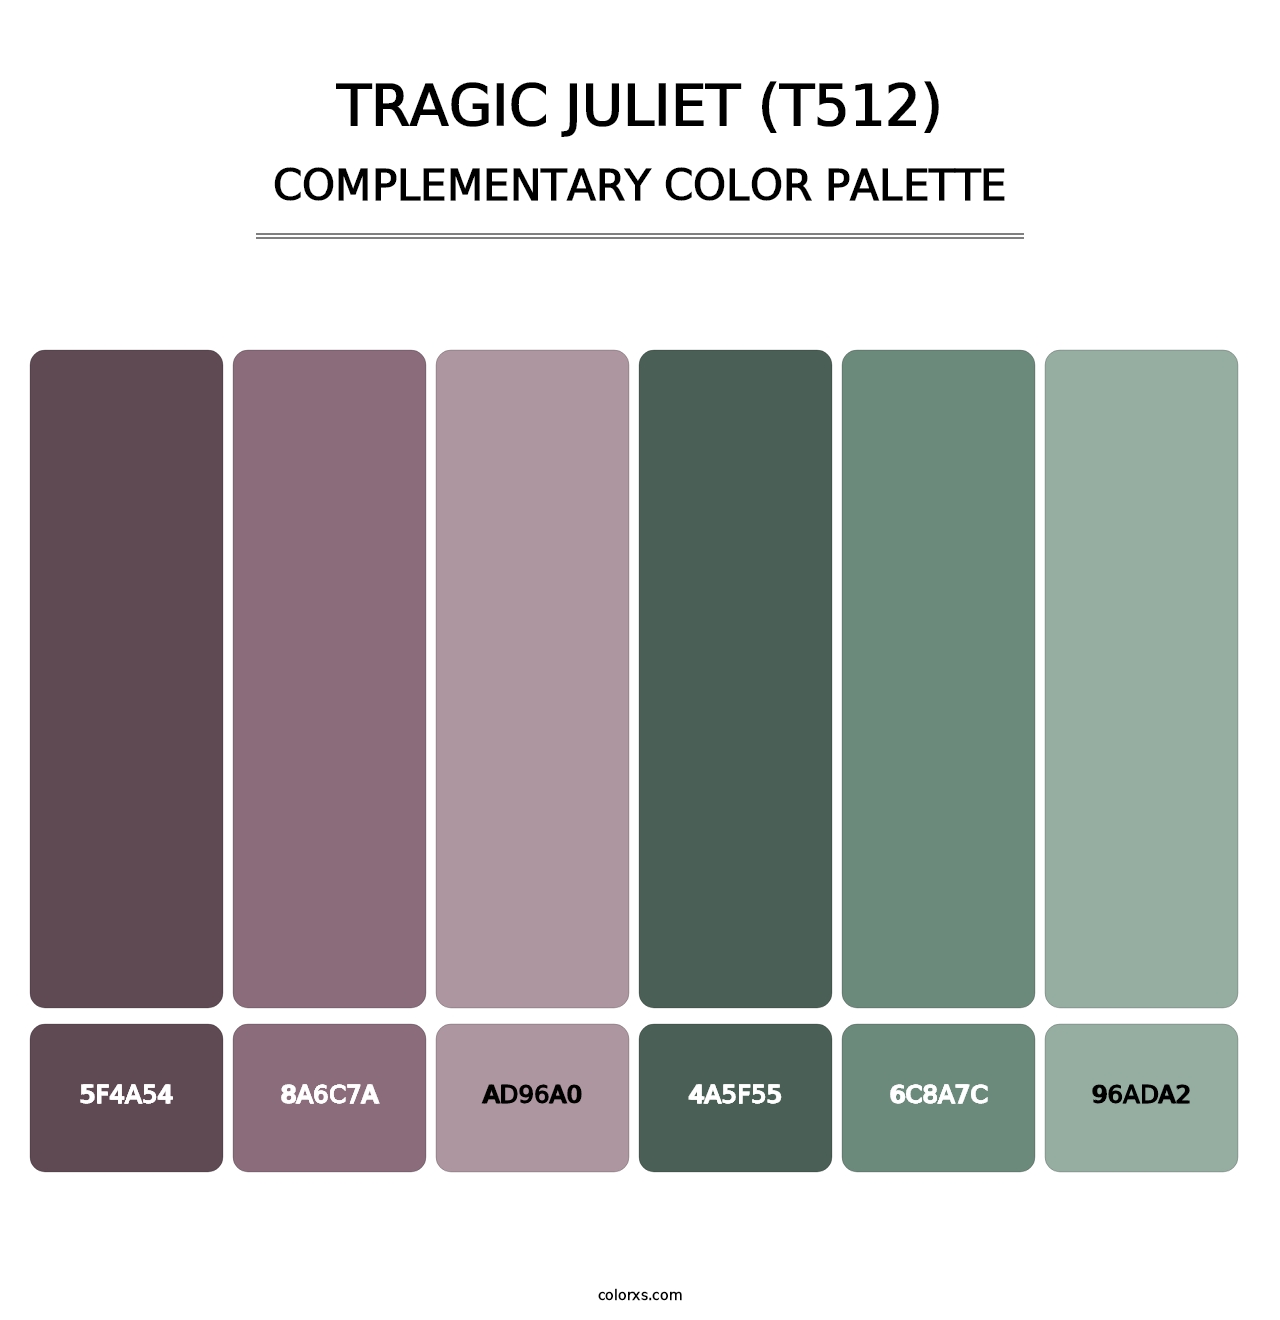 Tragic Juliet (T512) - Complementary Color Palette